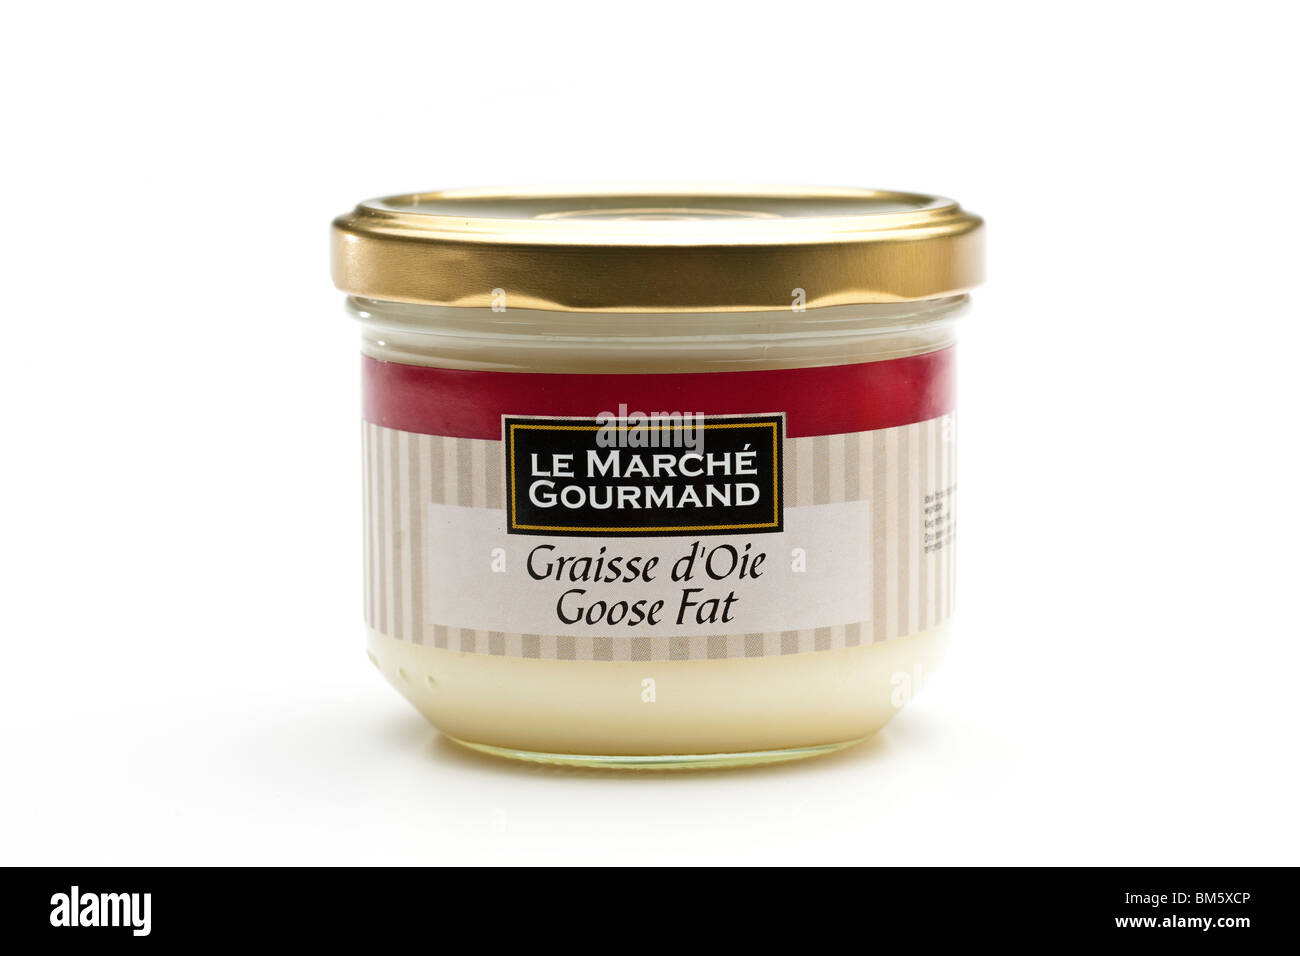 Jar of Le Marche Gourmand Graisse D Oie Goose Fat Stock Photo